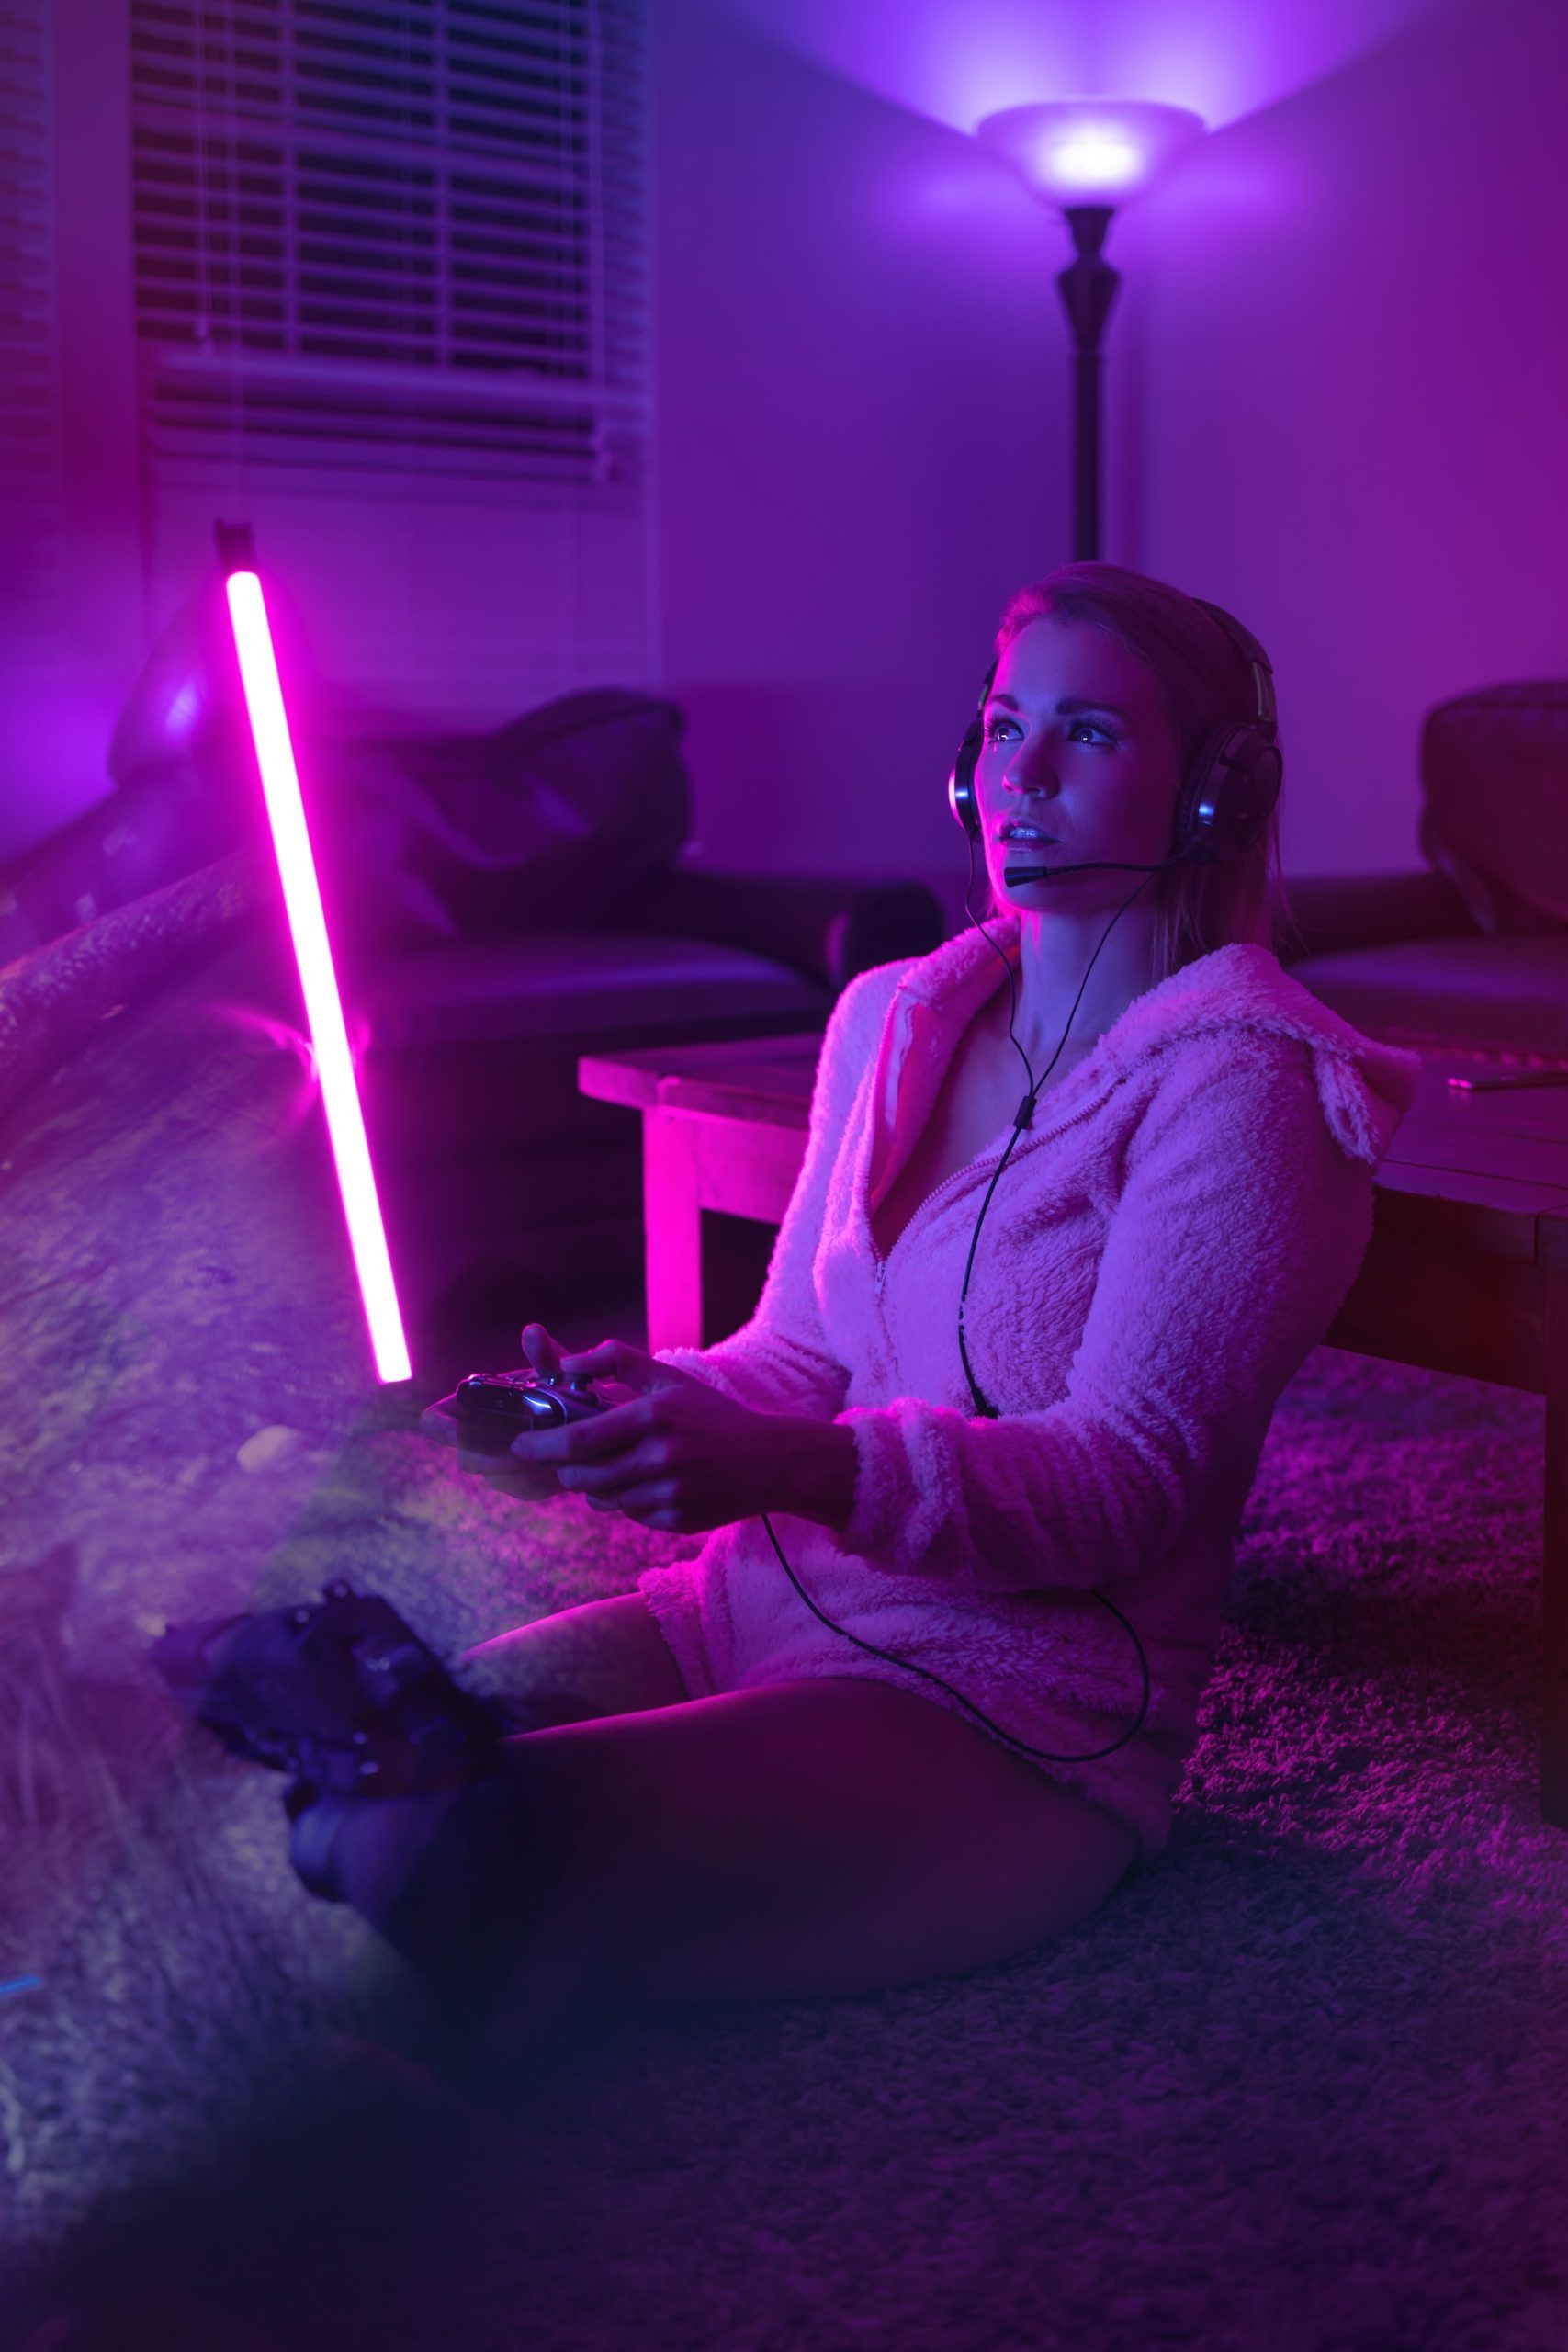 Jugadora de videjuegos sentada en el suelo en una habitación iluminada por luz de neón rosa